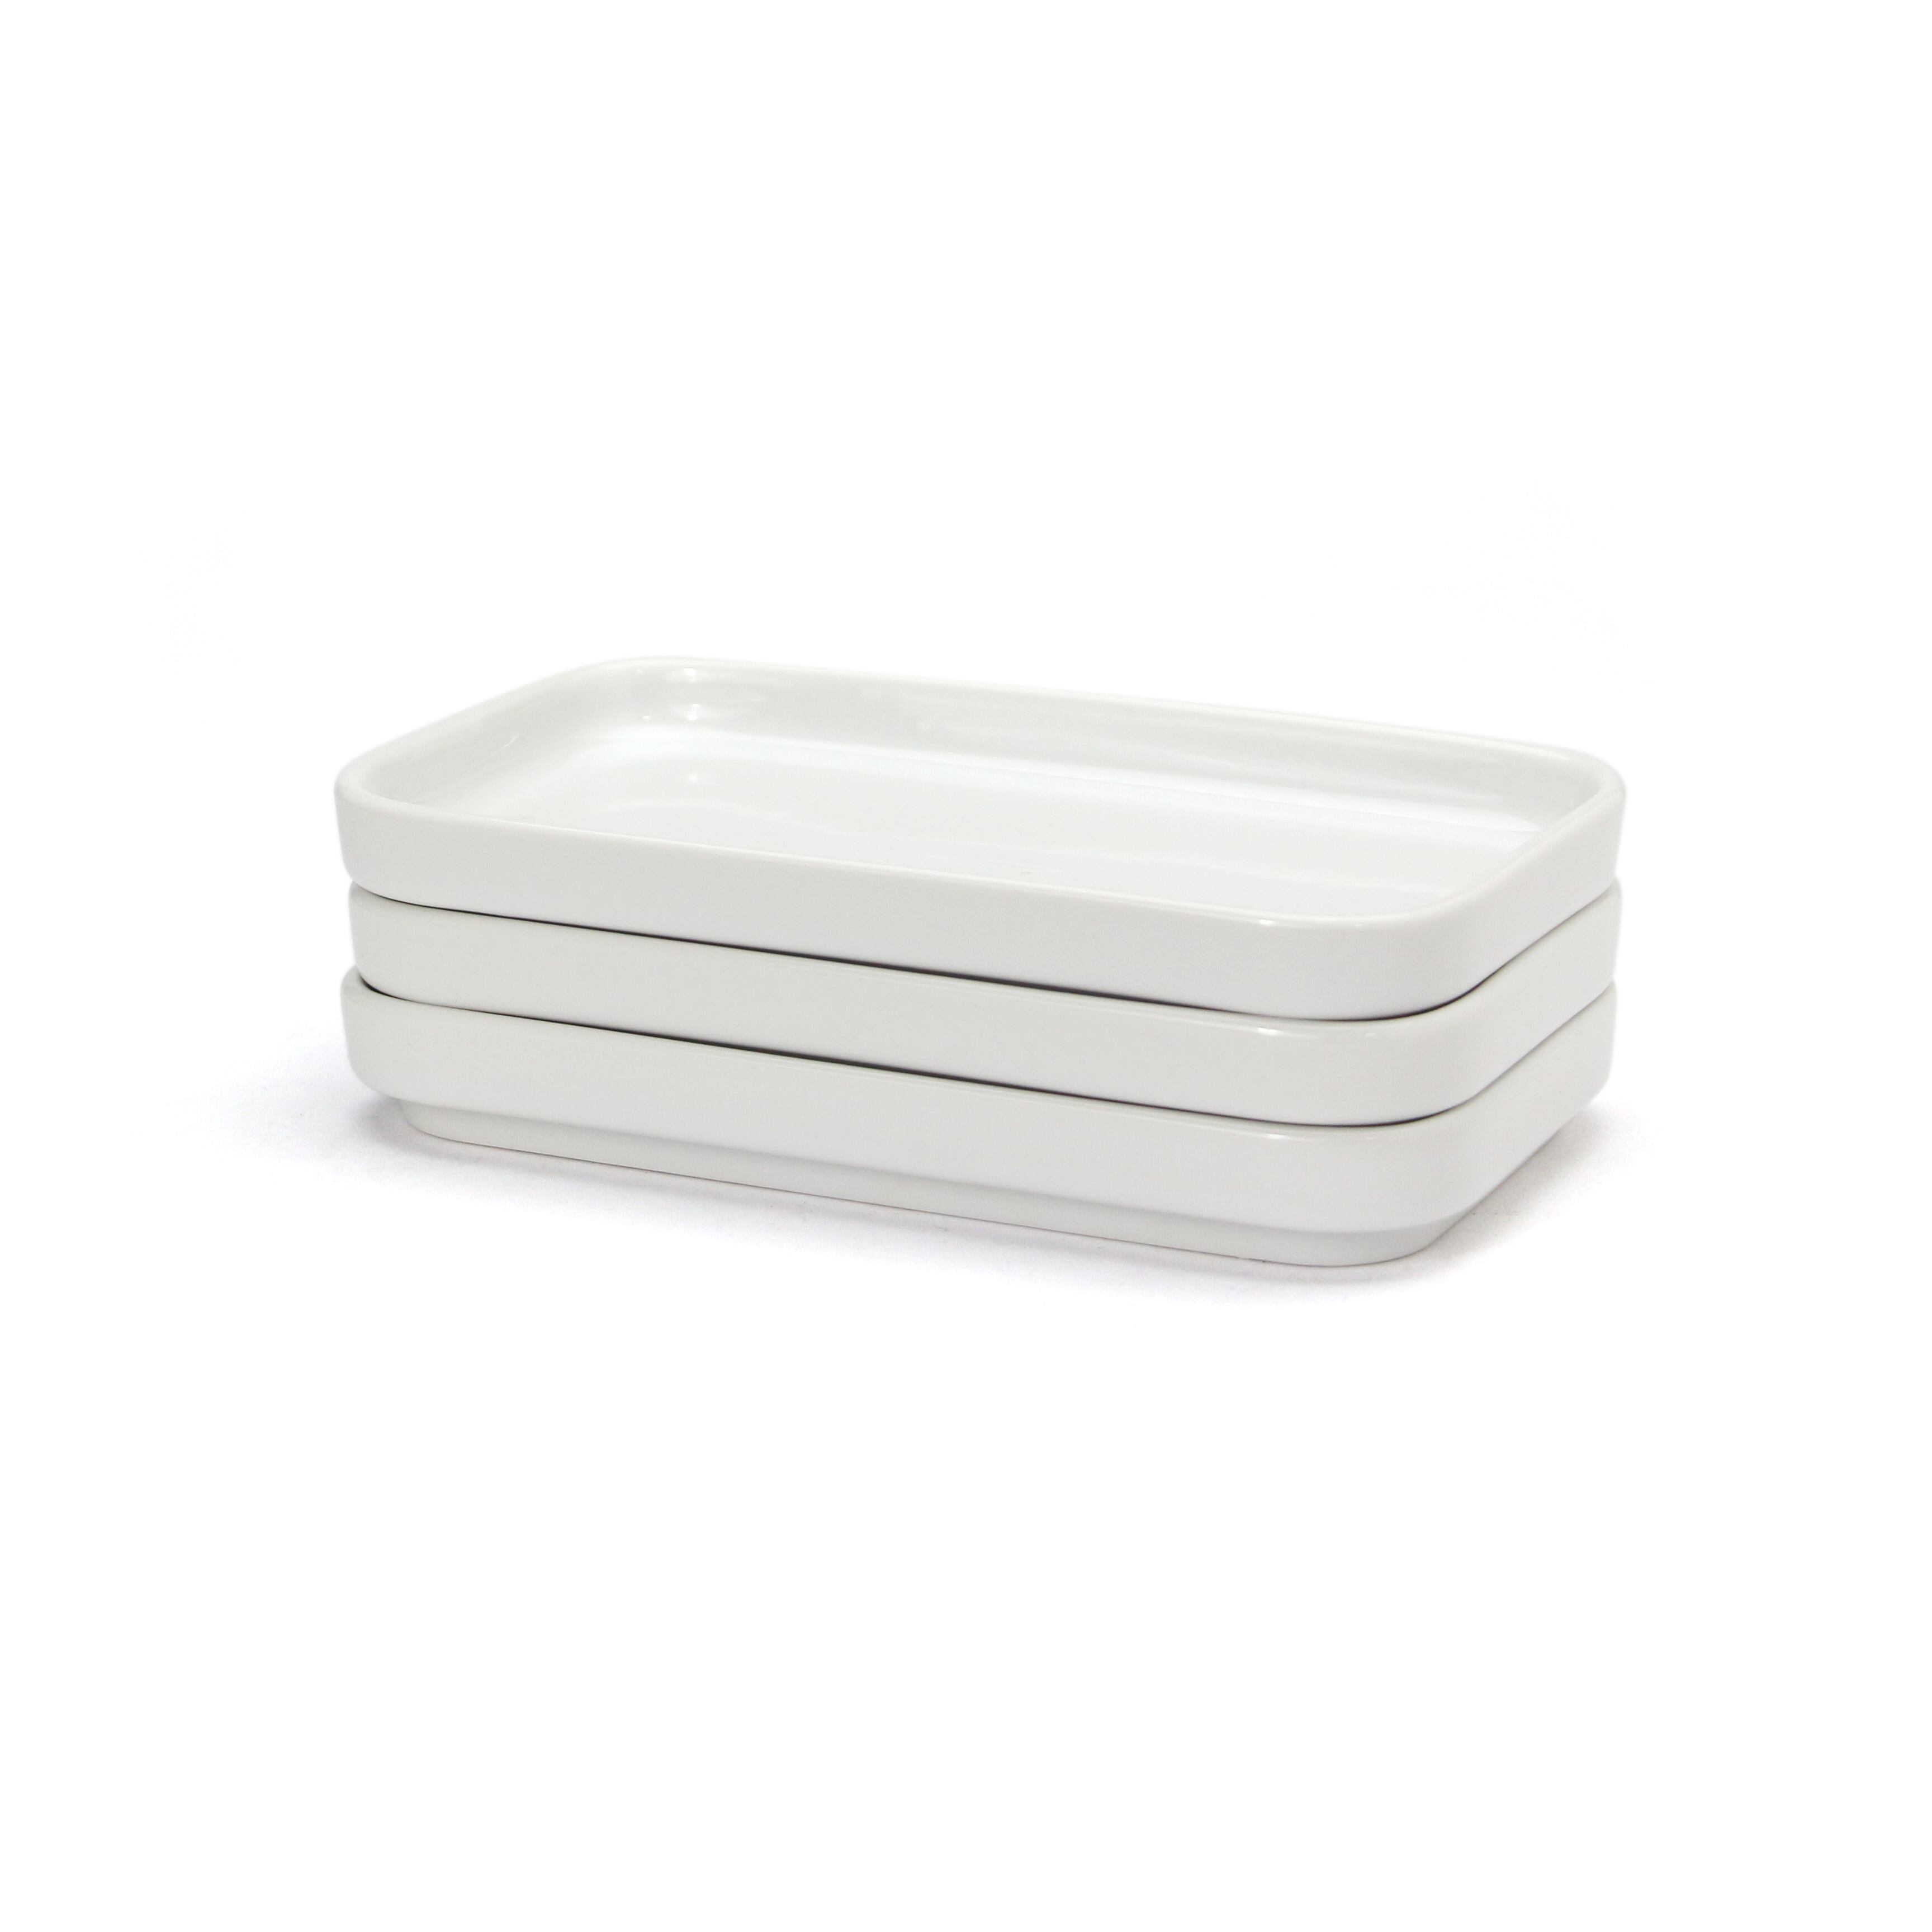 【Upgrade】Retro BC Tableware Plate Small “White” dros dro